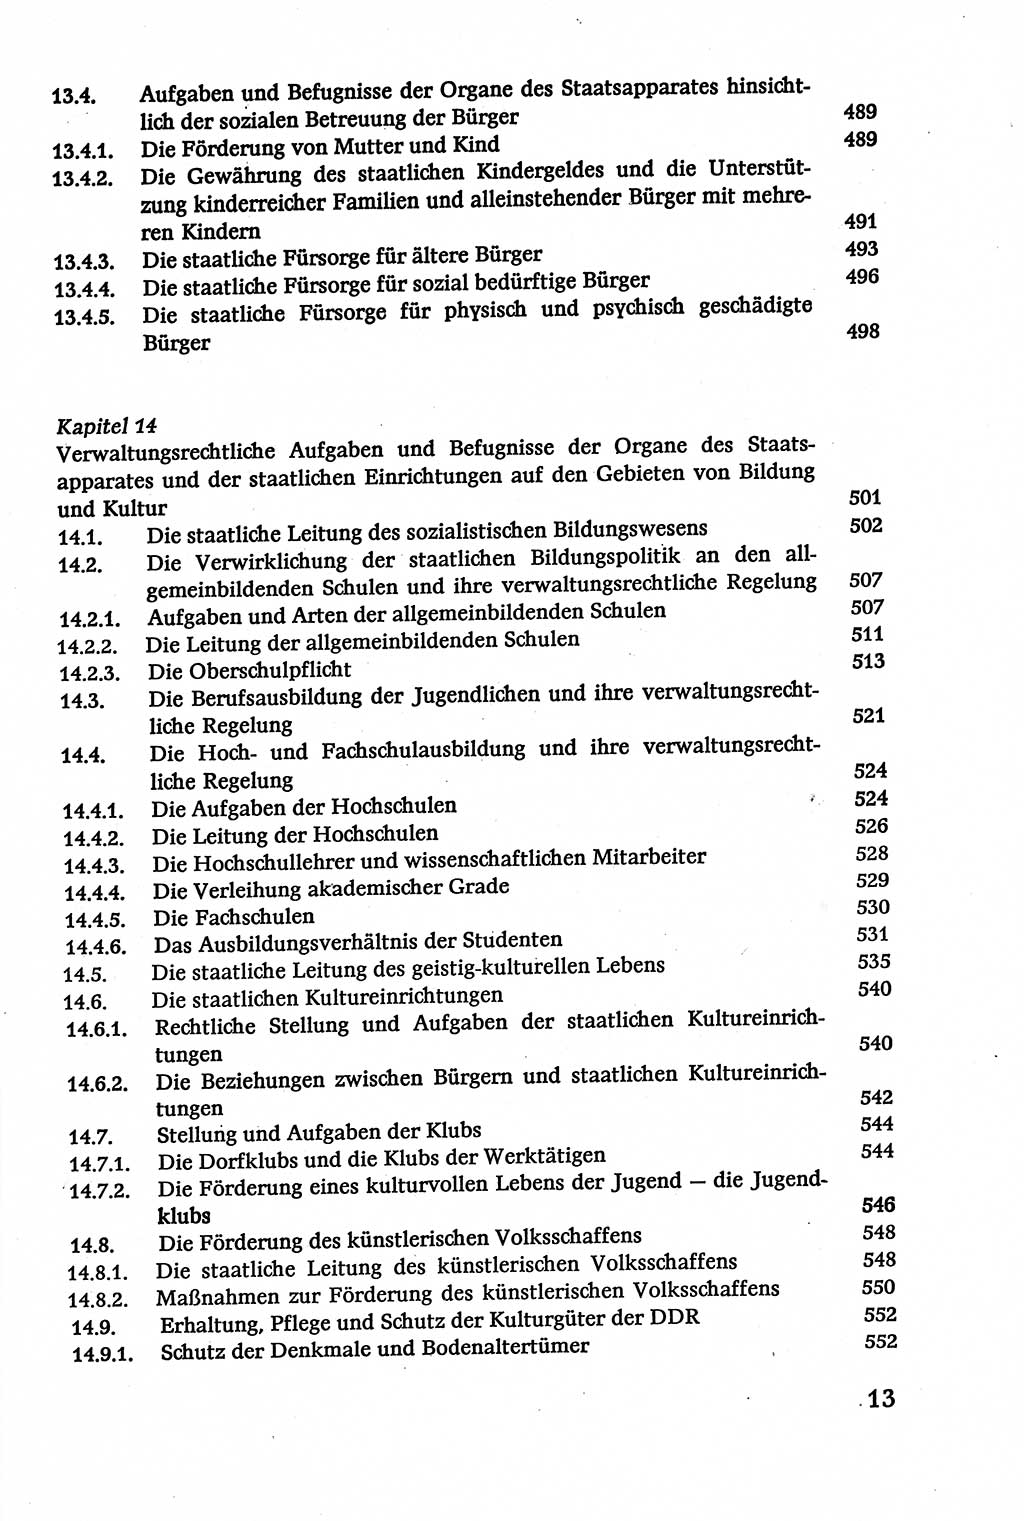 Verwaltungsrecht [Deutsche Demokratische Republik (DDR)], Lehrbuch 1979, Seite 13 (Verw.-R. DDR Lb. 1979, S. 13)